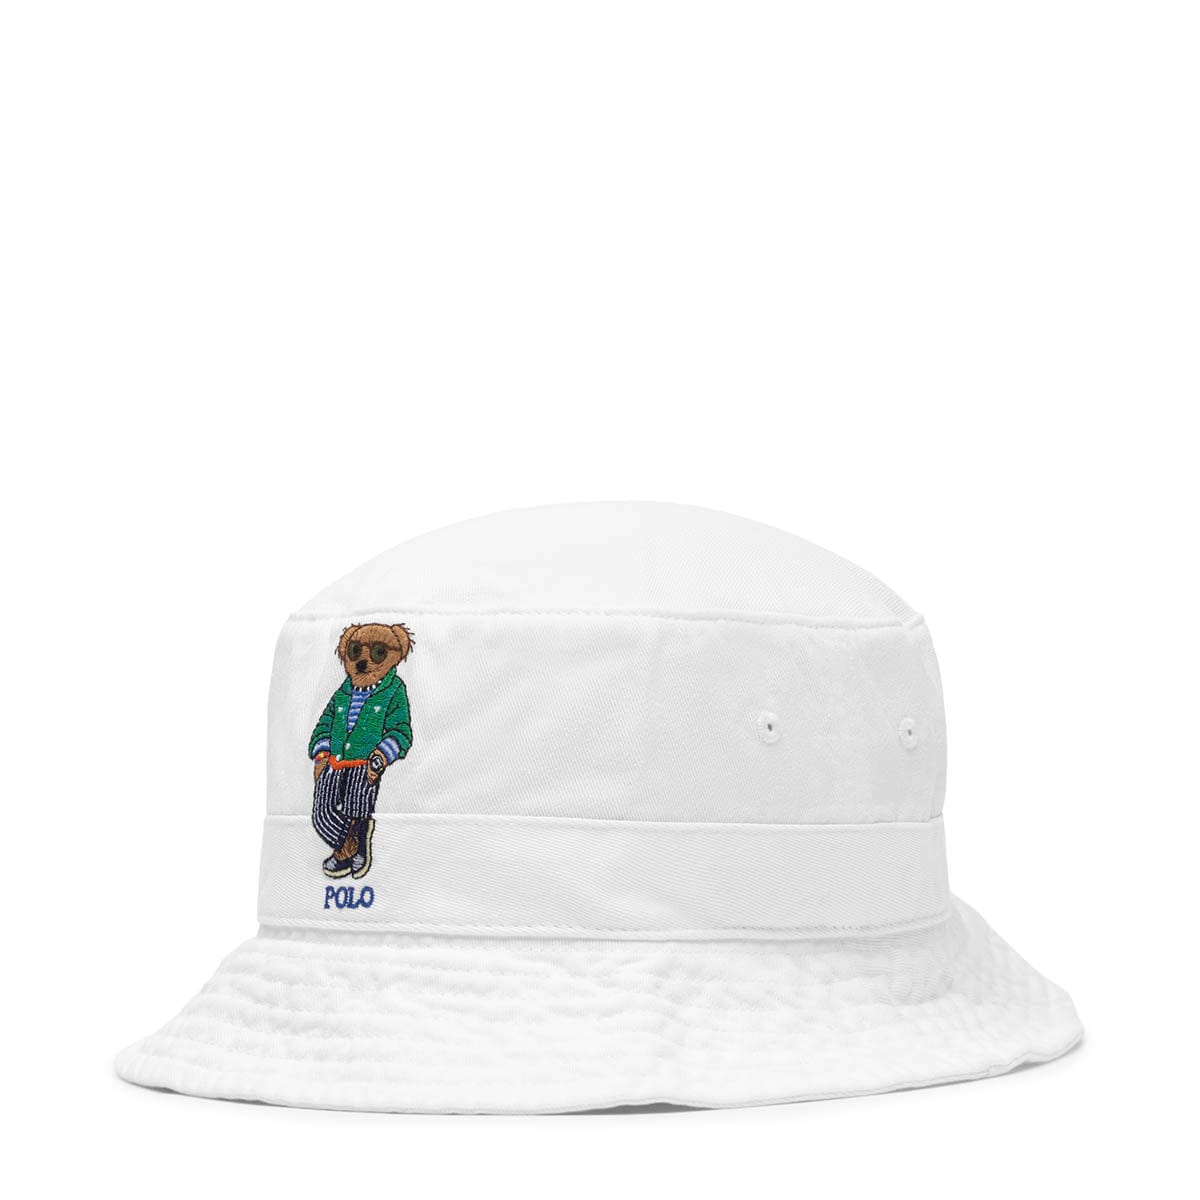 Polo Ralph Lauren Headwear POLO BEAR BUCKET HAT